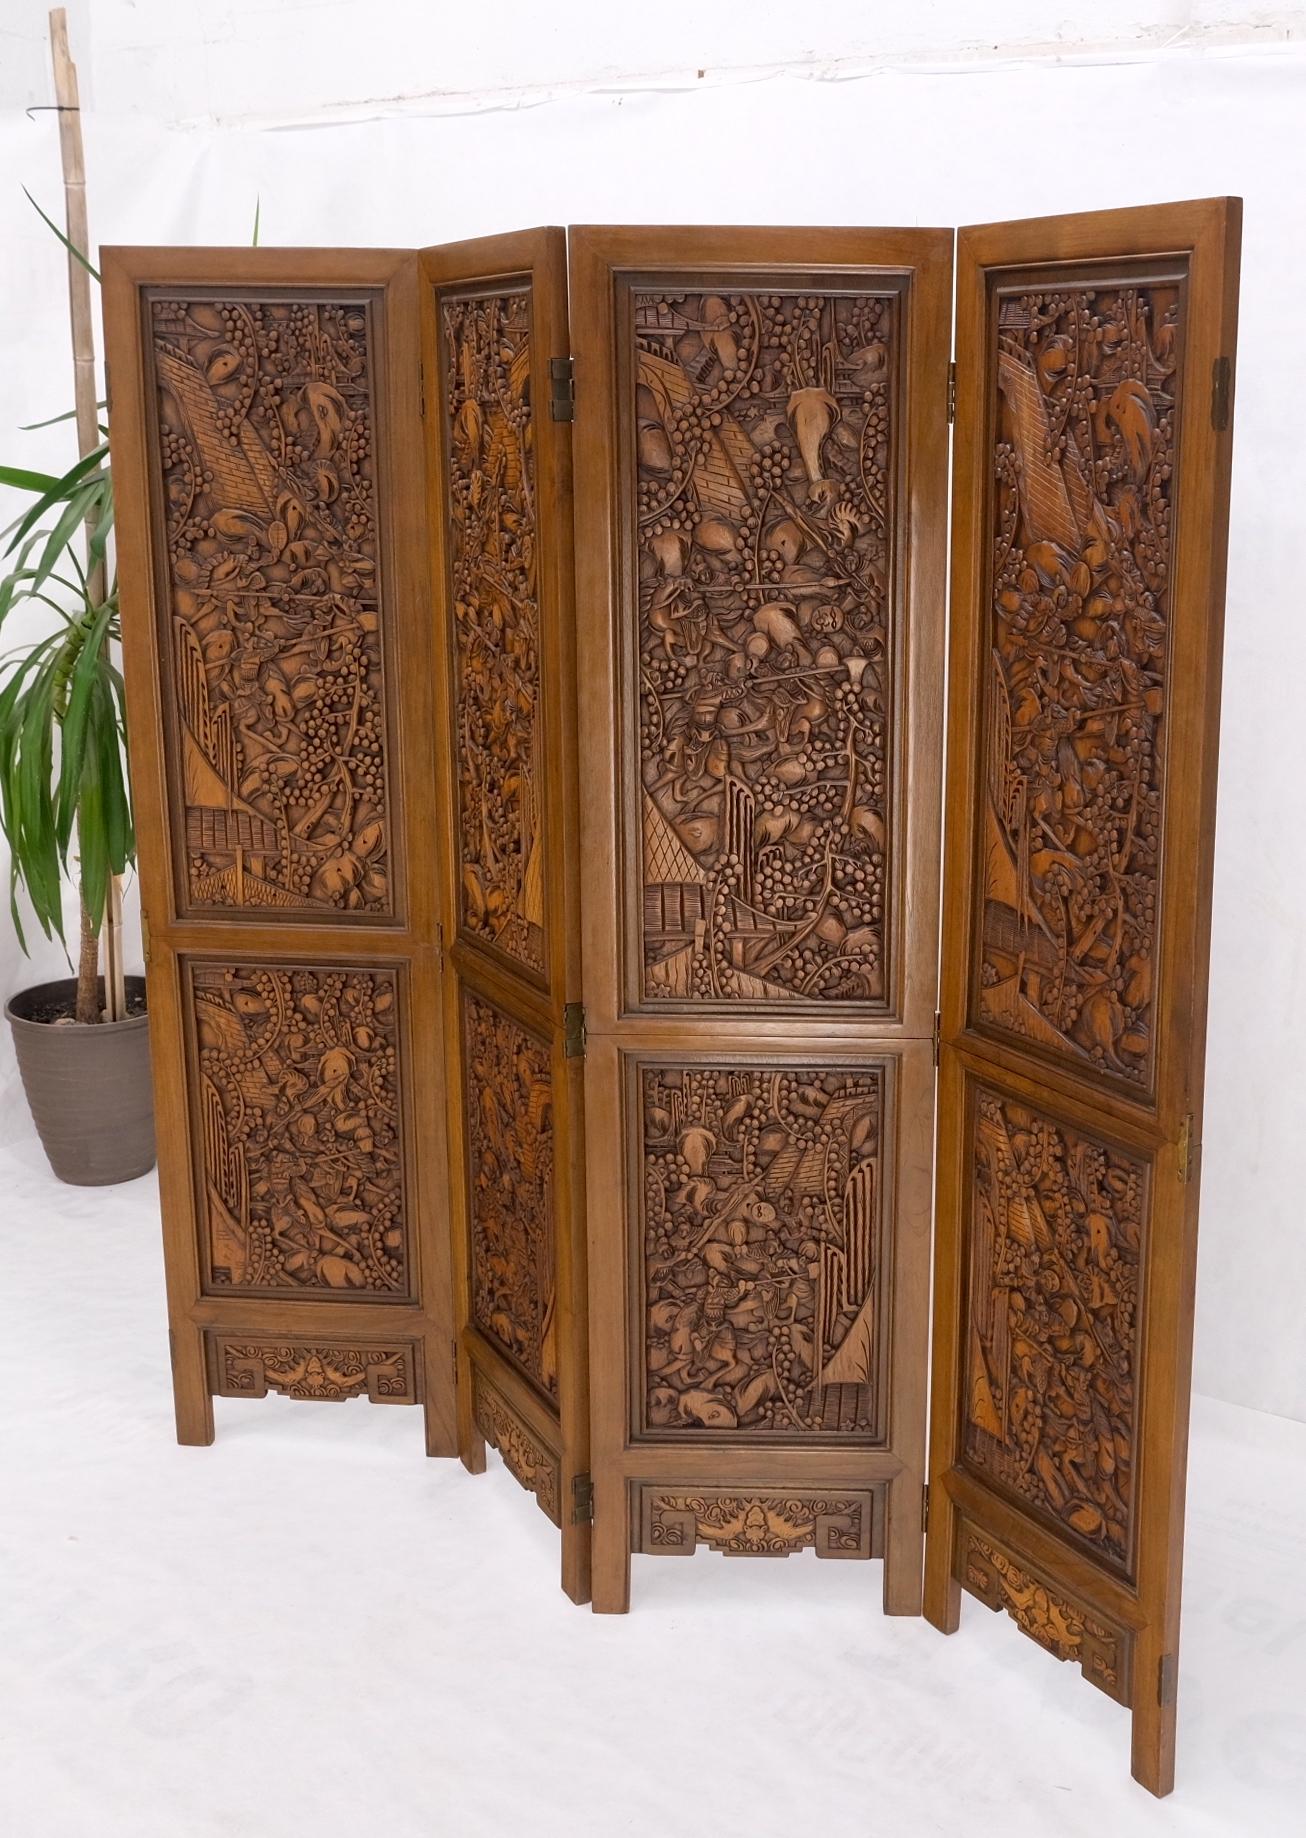 4 Panels carved teak fine details room divider screen heavy brass hinges mint.